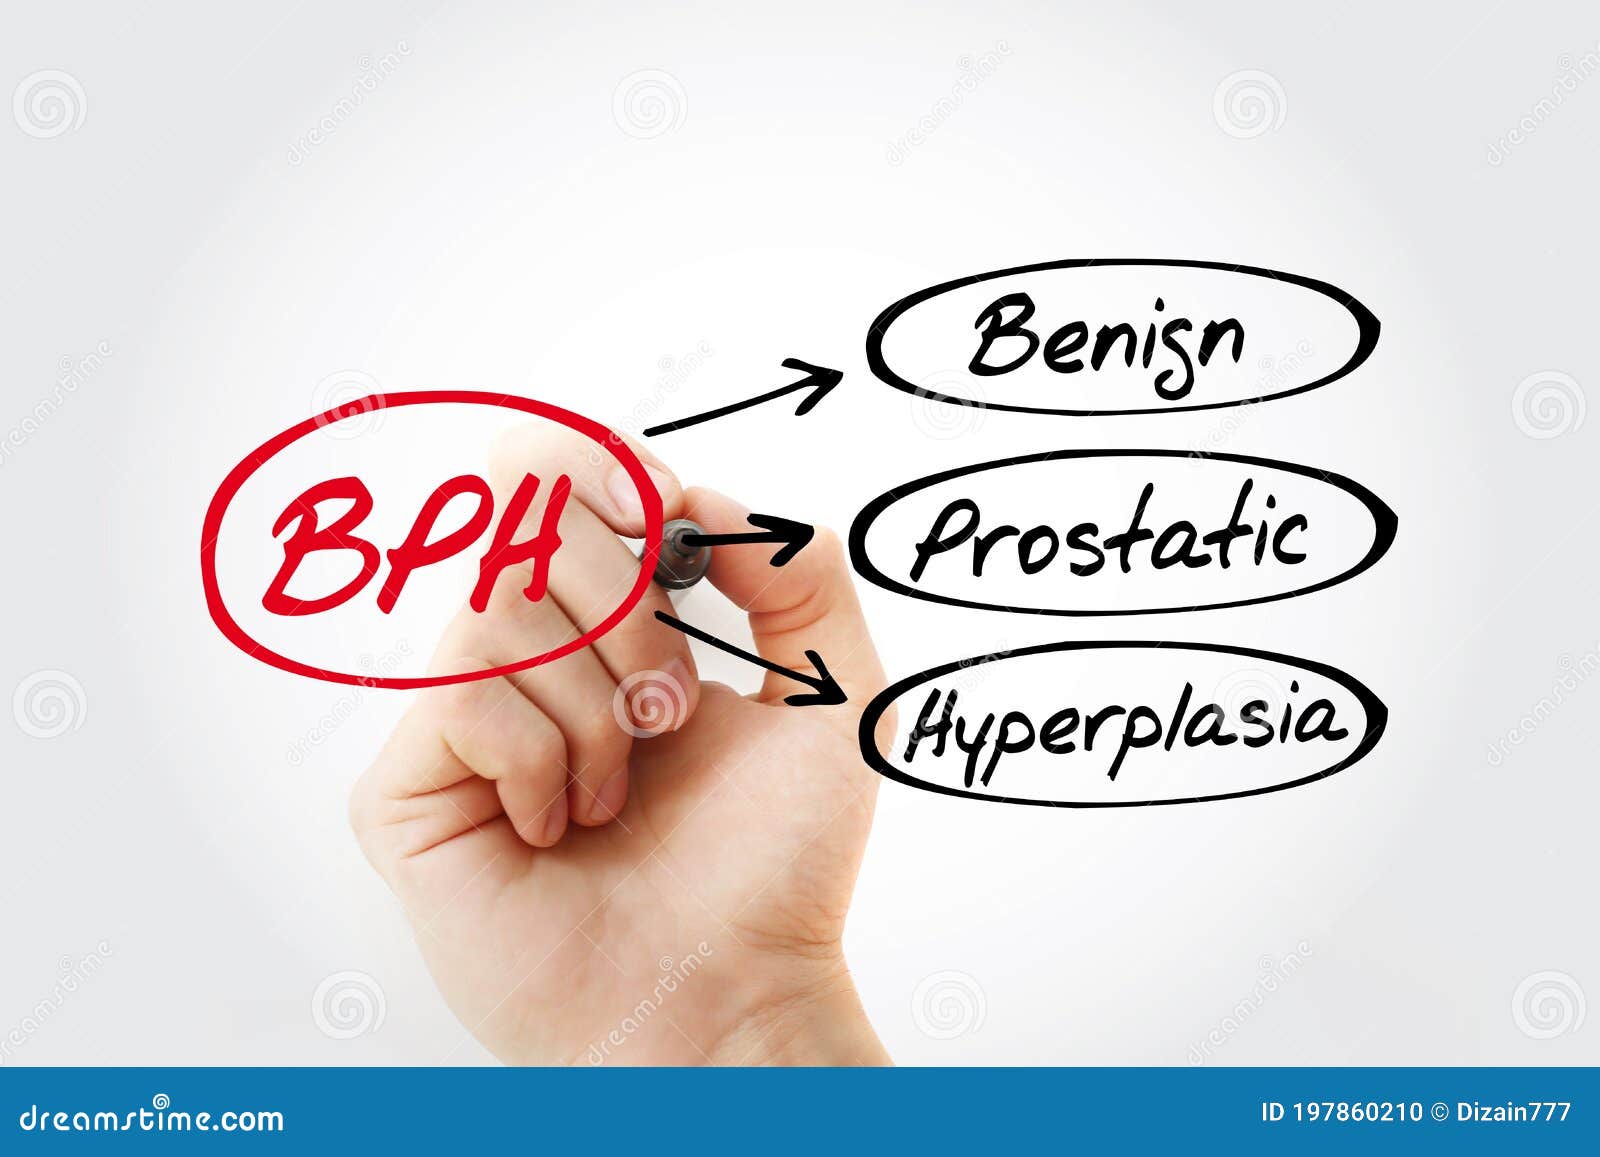 Bph medical abbreviation